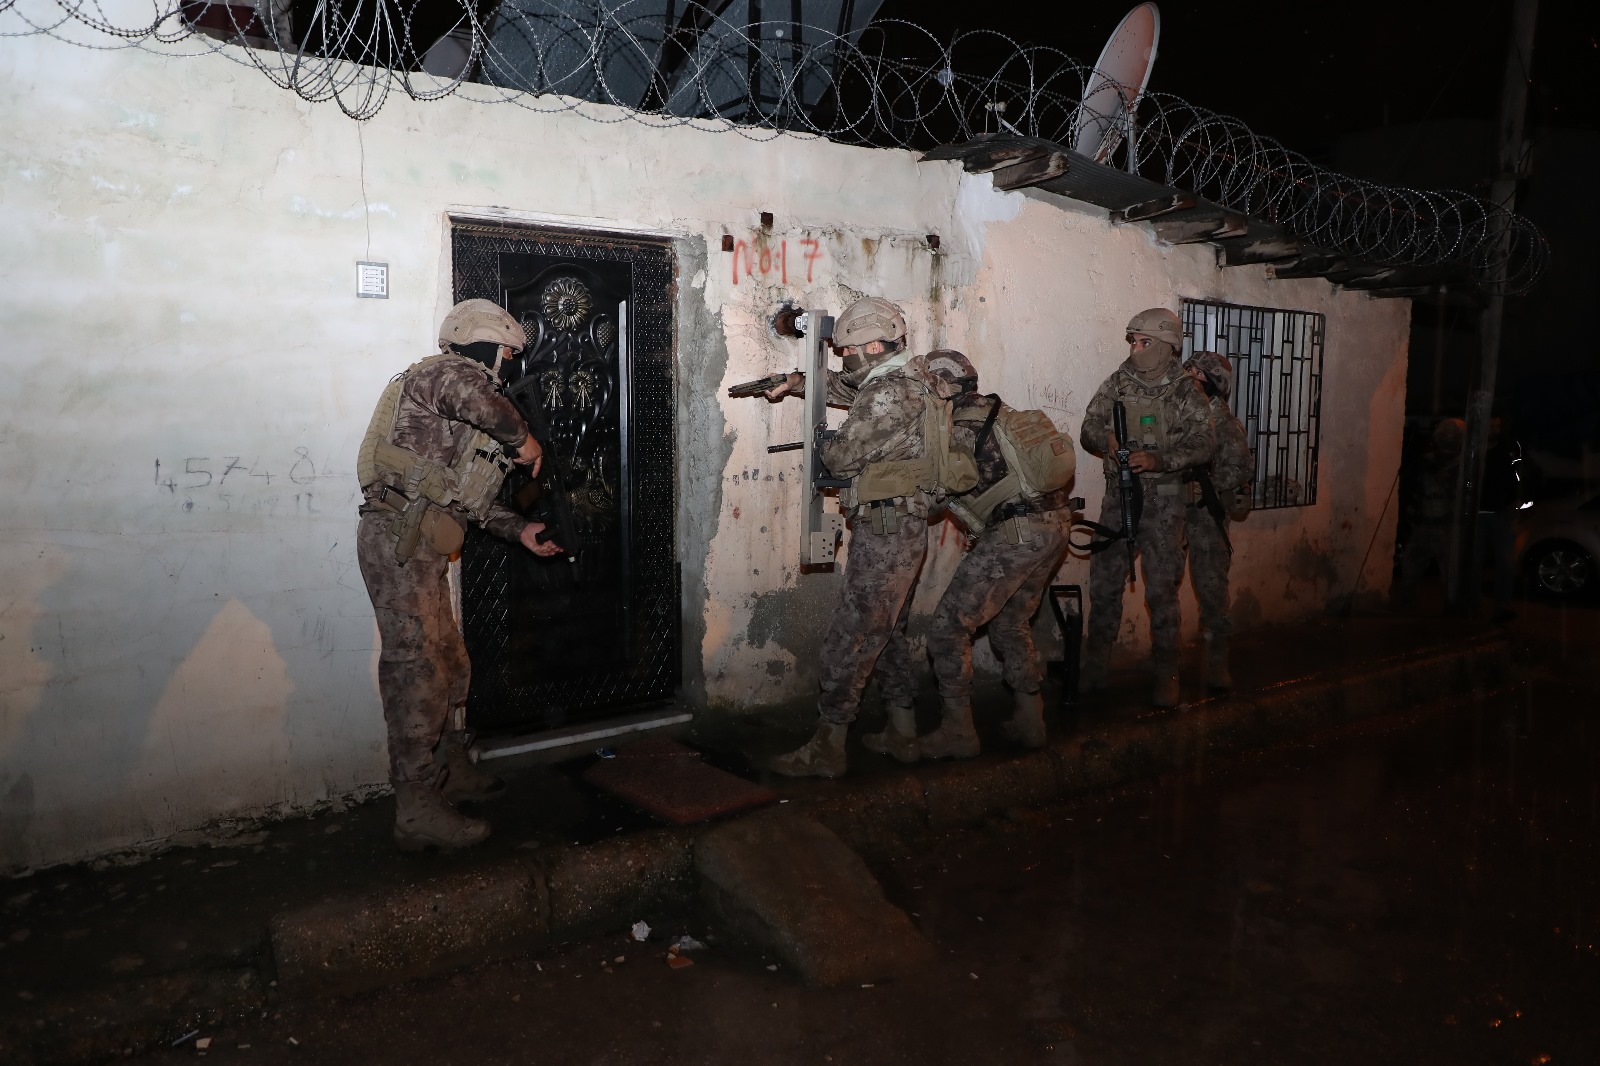 Mersin’de bugün sabahın erken saatlerinde, 431 polis memuru tarafından gerçekleştirilen operasyonla uyuşturucu satıcılarına darbe vuruldu. Operasyon sonucunda 21 kişi gözaltına alındı.